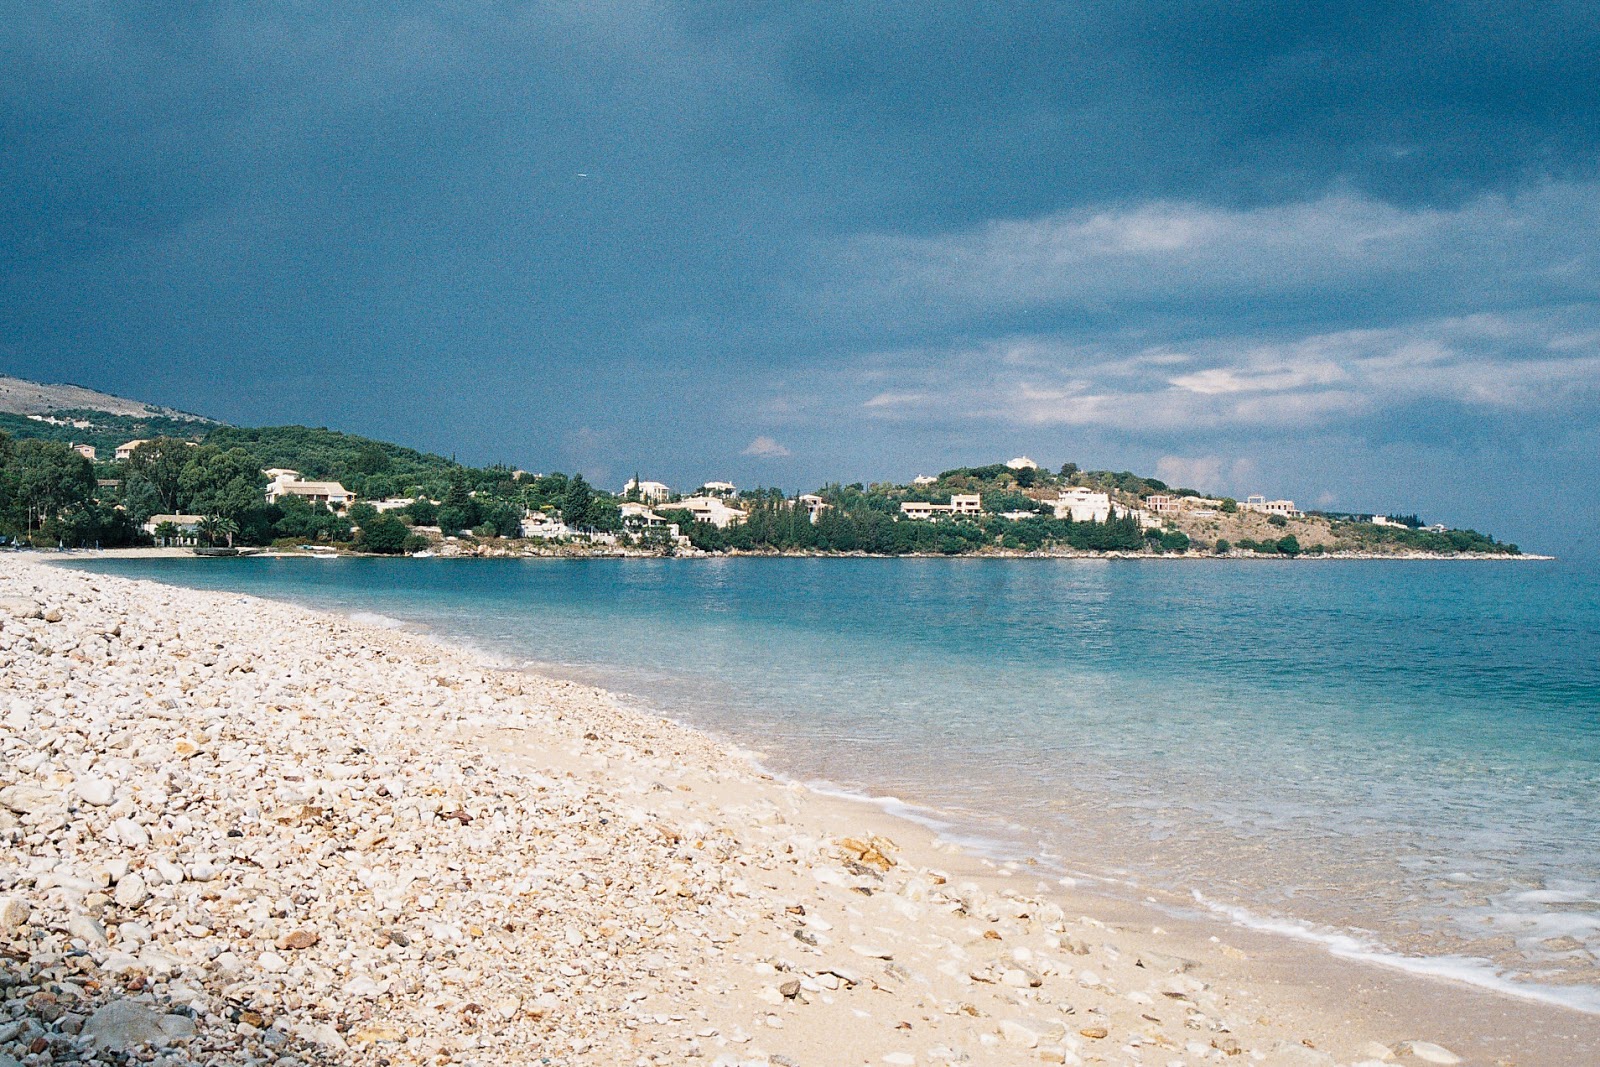 Foto de Kogevina beach com praia espaçosa